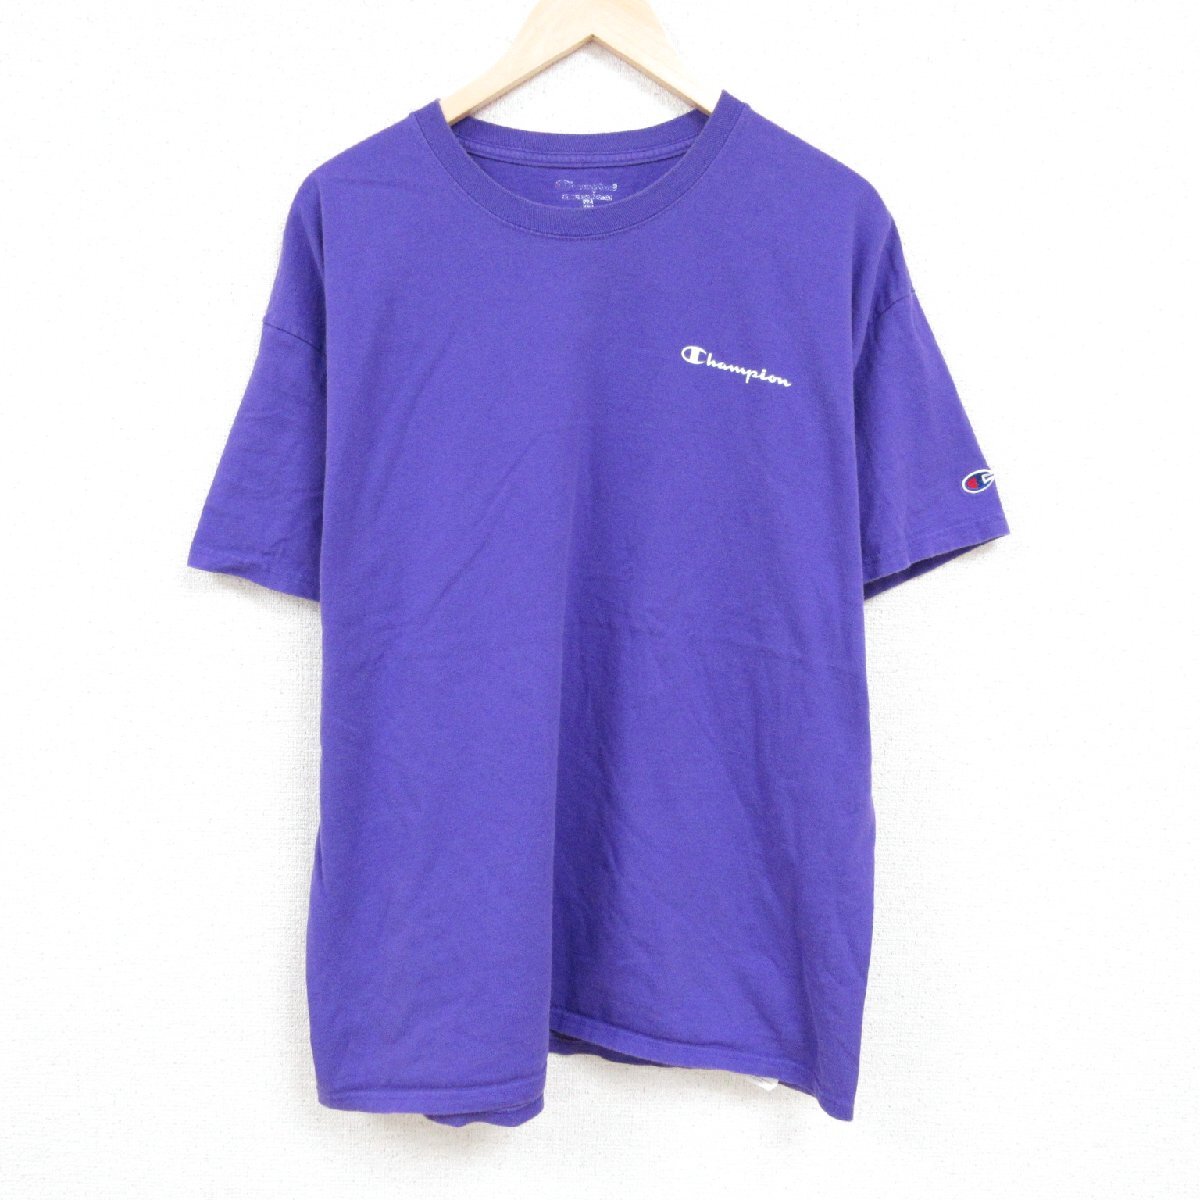 XL/古着 チャンピオン Champion 半袖 ブランド Tシャツ メンズ ワンポイントロゴ 大きいサイズ コットン クルーネック 紫 パープル 24apr05_画像1